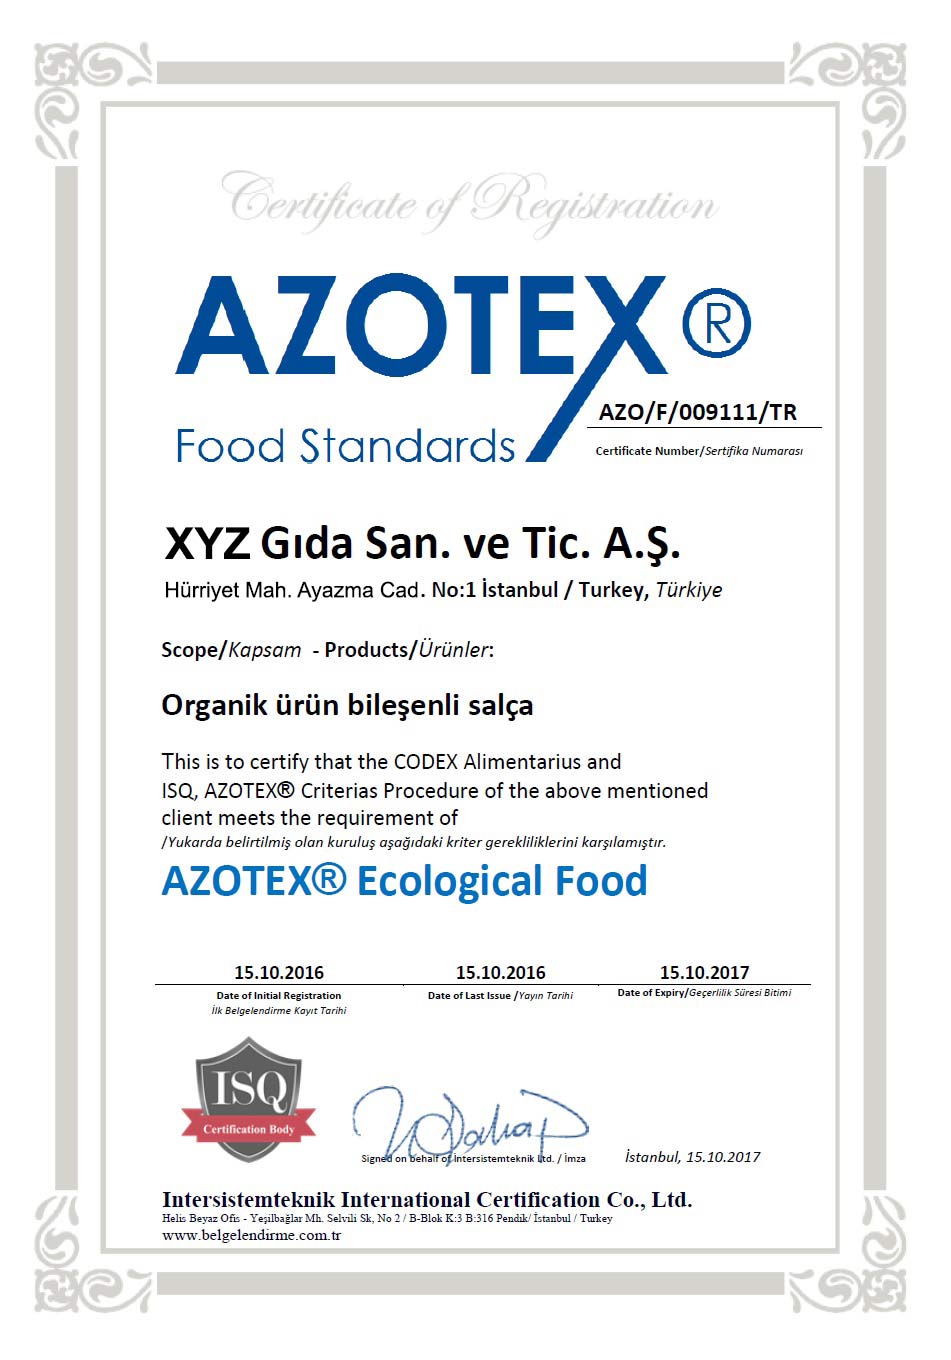 örnek azotex ekolojik gıda belgesi